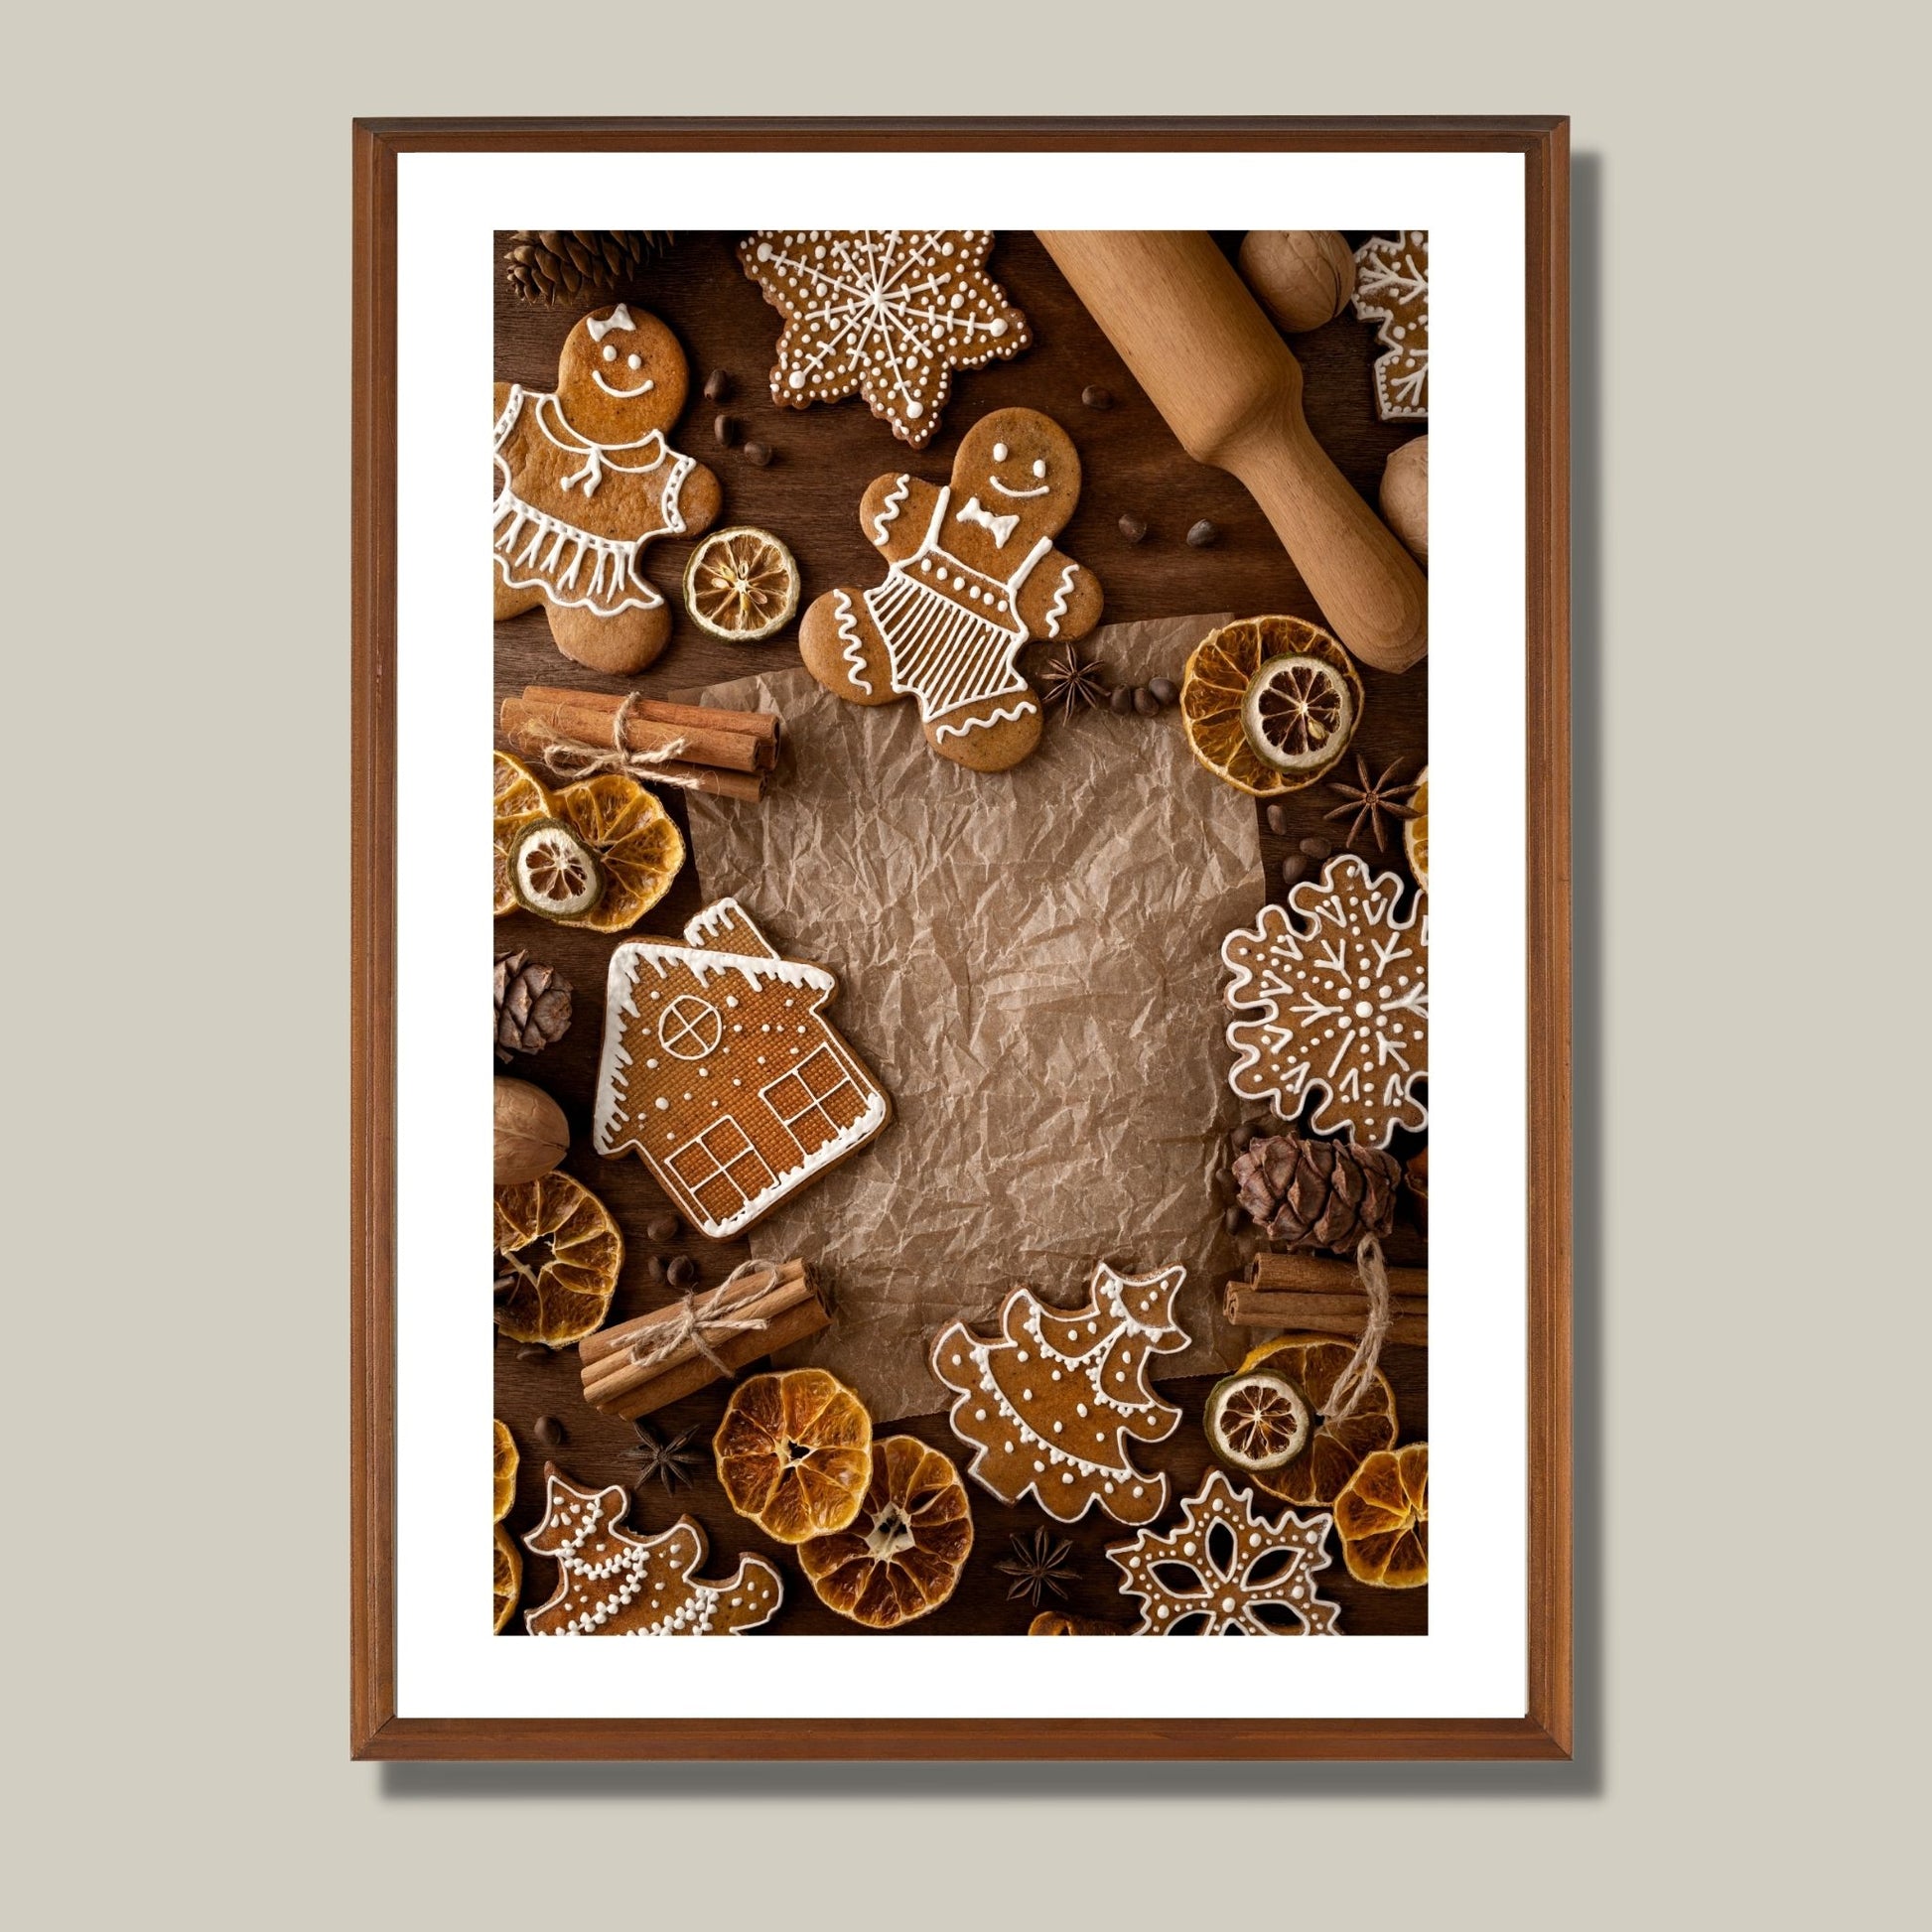 Plakat med dekorativt motiv av pepperkaker med melisglasur.  Illustrasjonen viser plakaten i eikeramme som henger på en vegg.